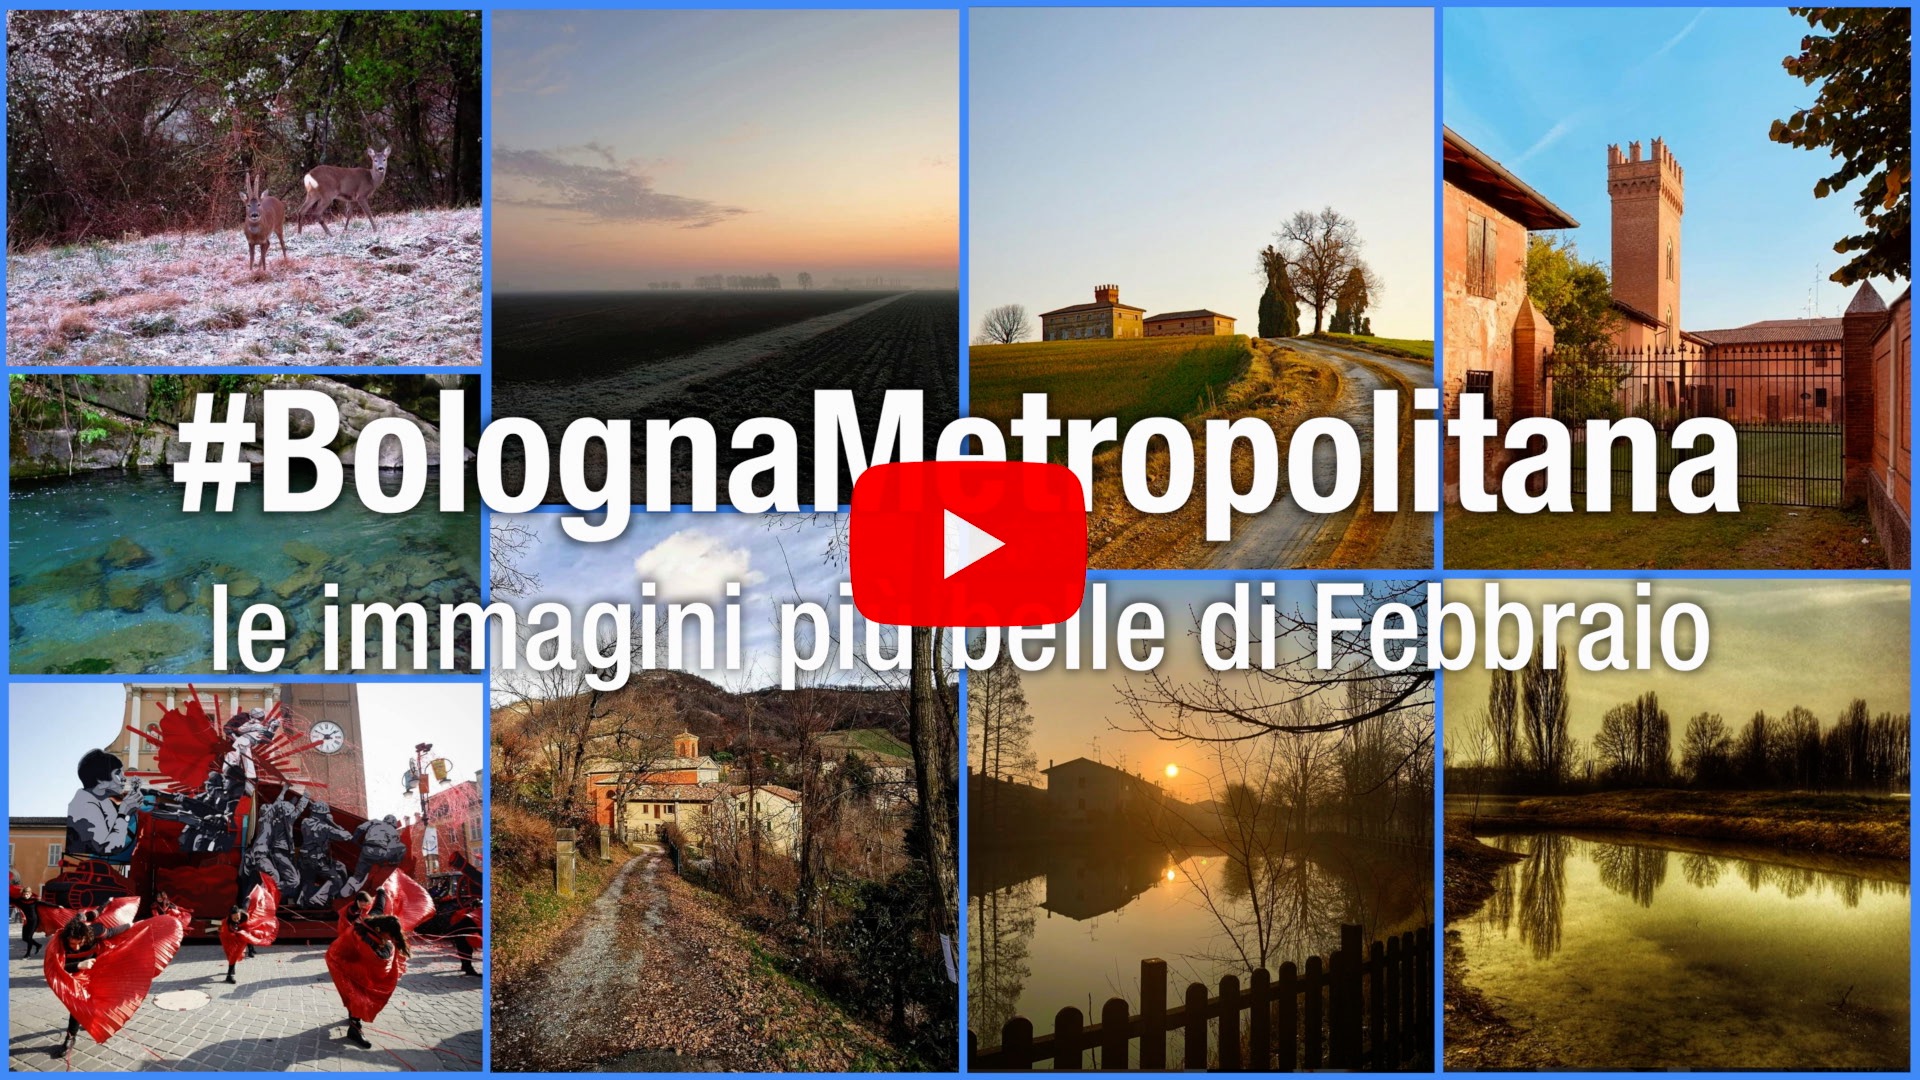 #BolognaMetropolitana - Le immagini più belle di febbraio 2020